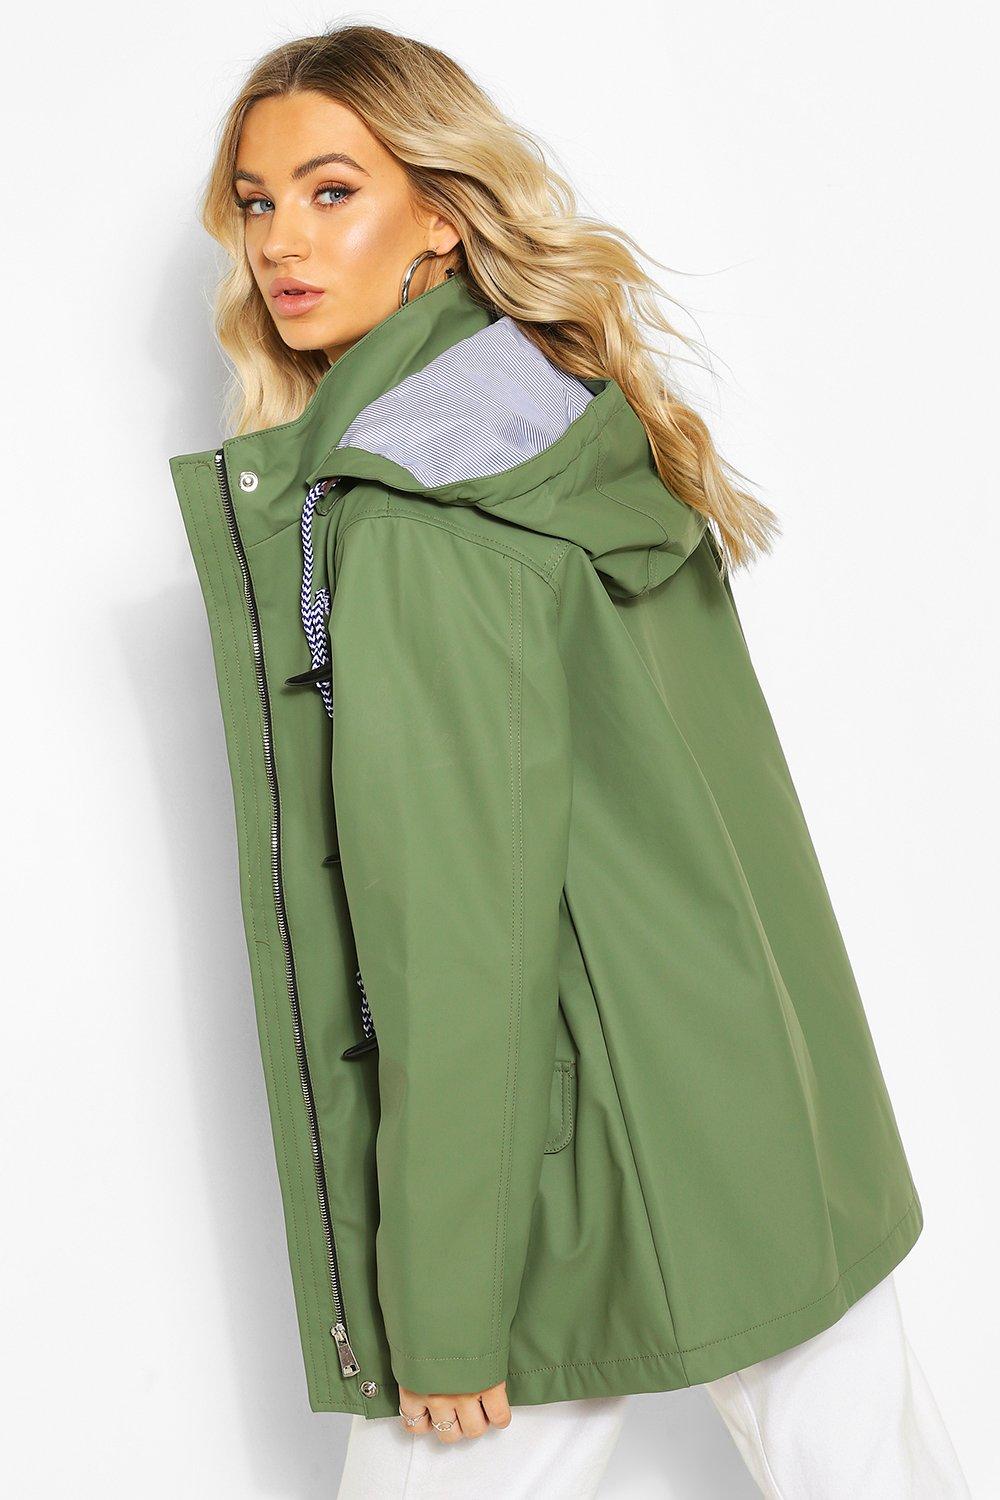 ladies lightweight waterproof jacket with hood